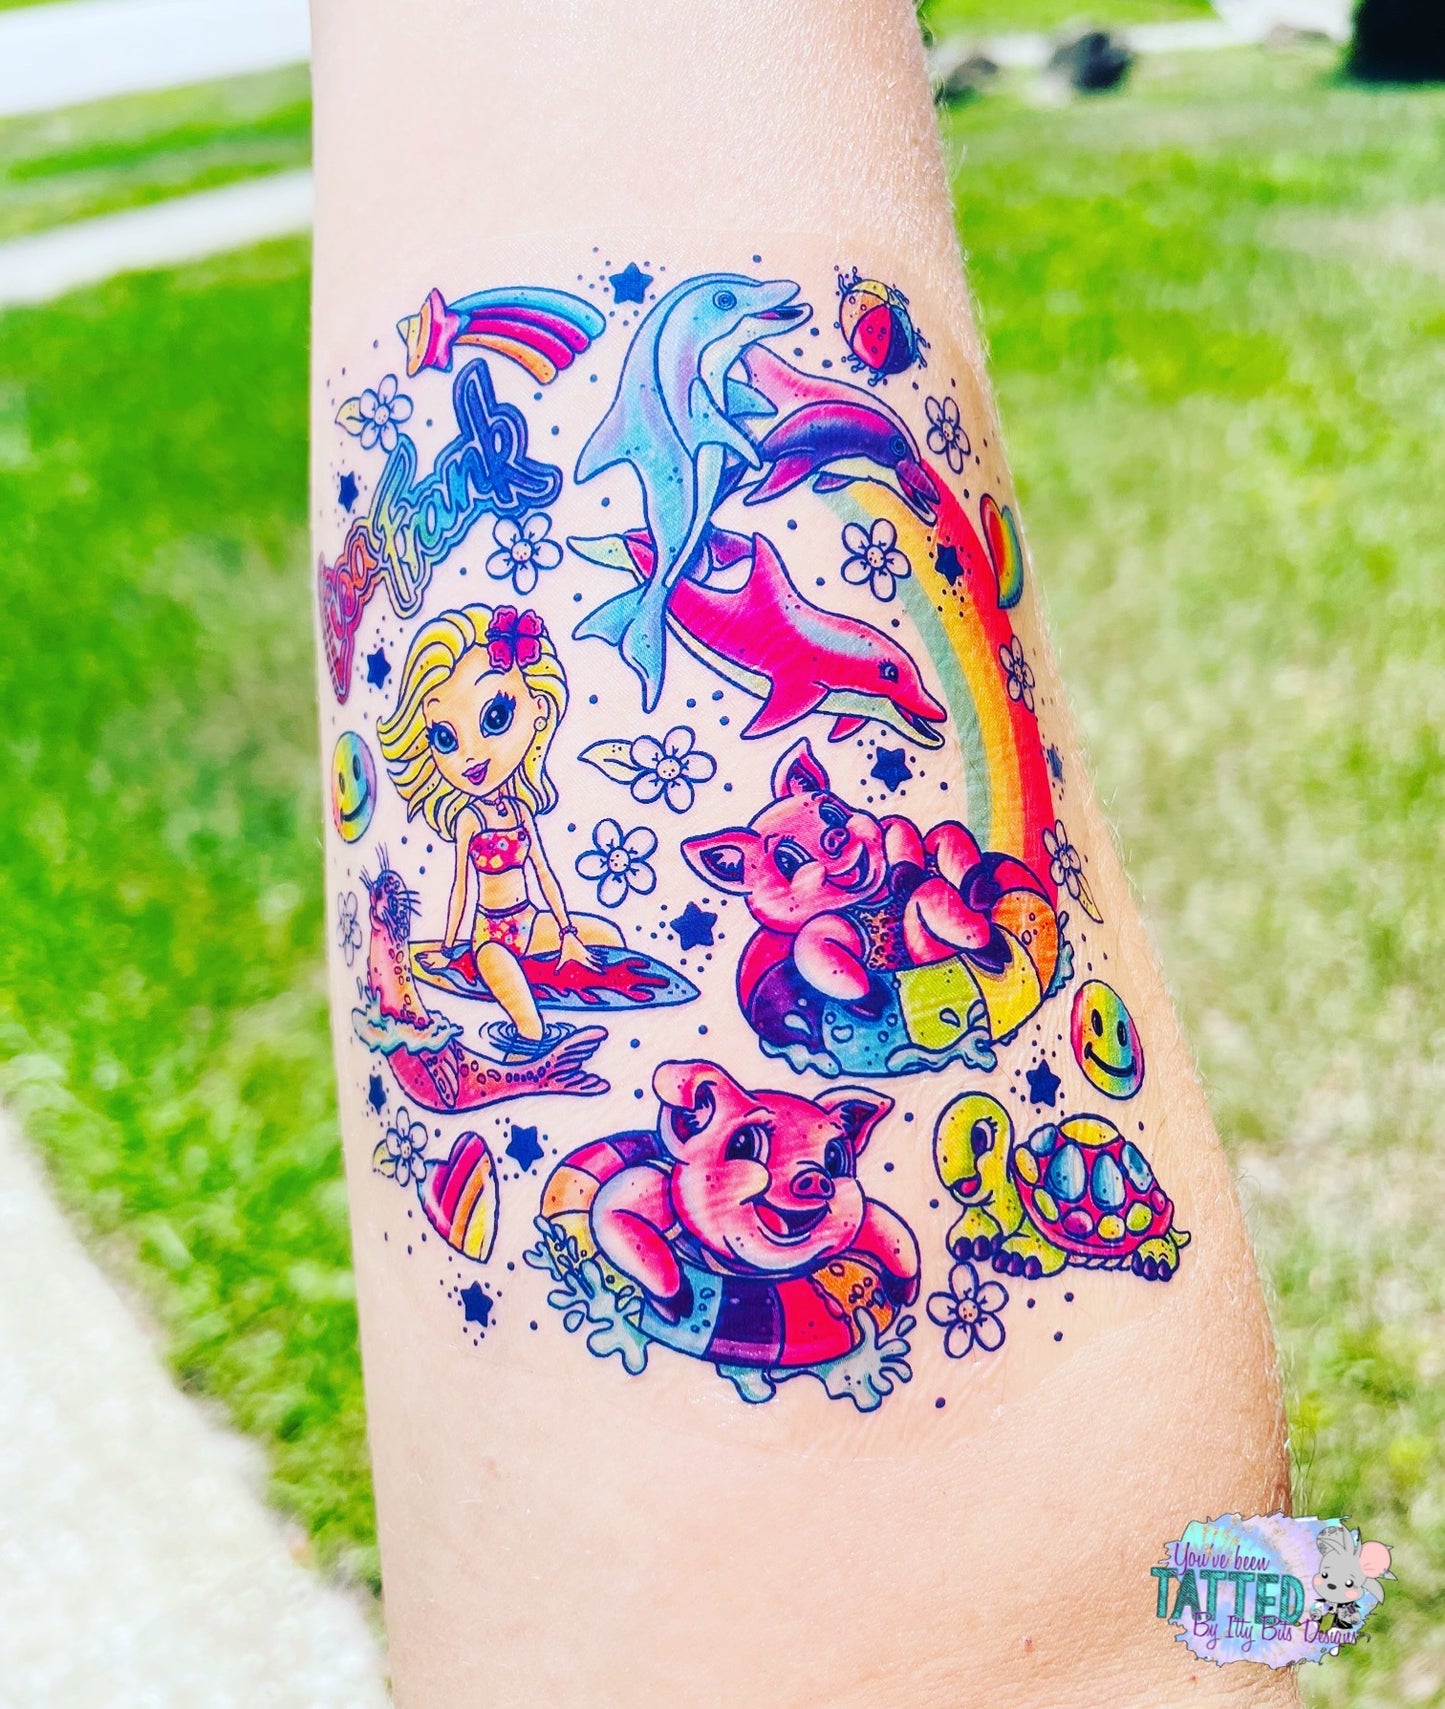 Summer 90s Girl Half Sleeve tattoo